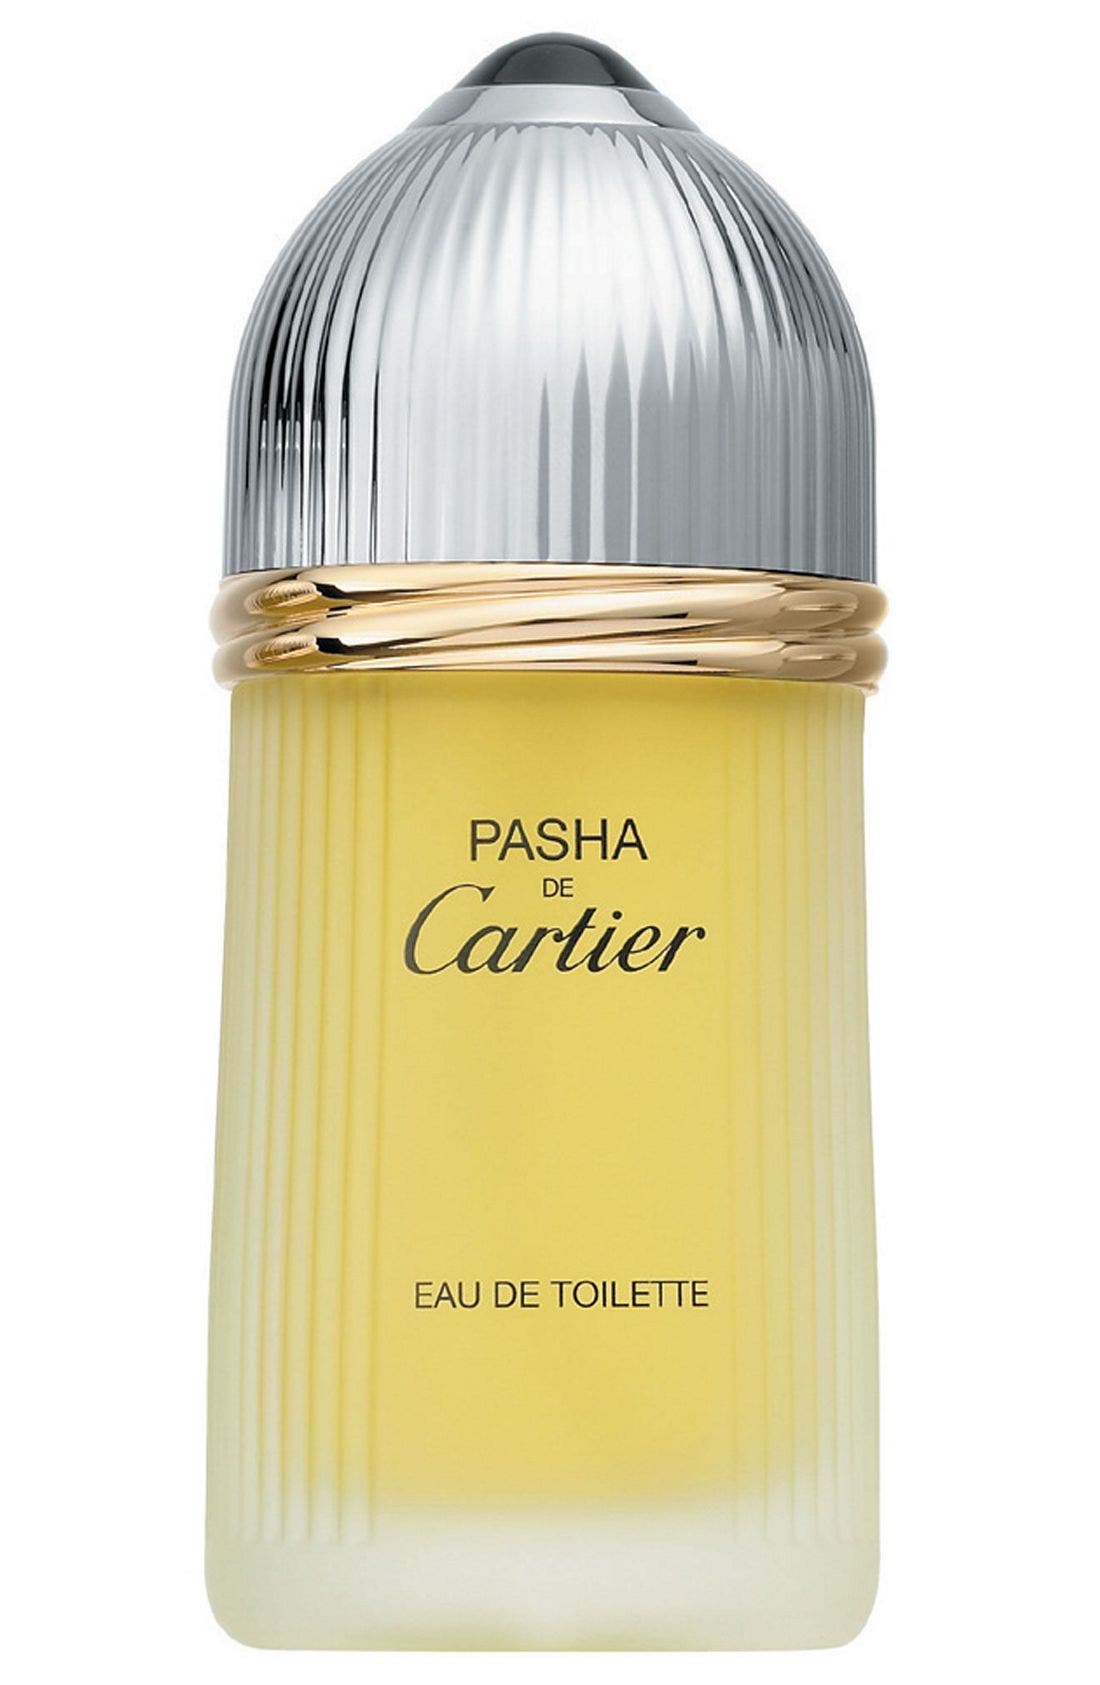 Pasha de Cartier Eau de Toilette at Nordstrom, Size 3.3 Oz